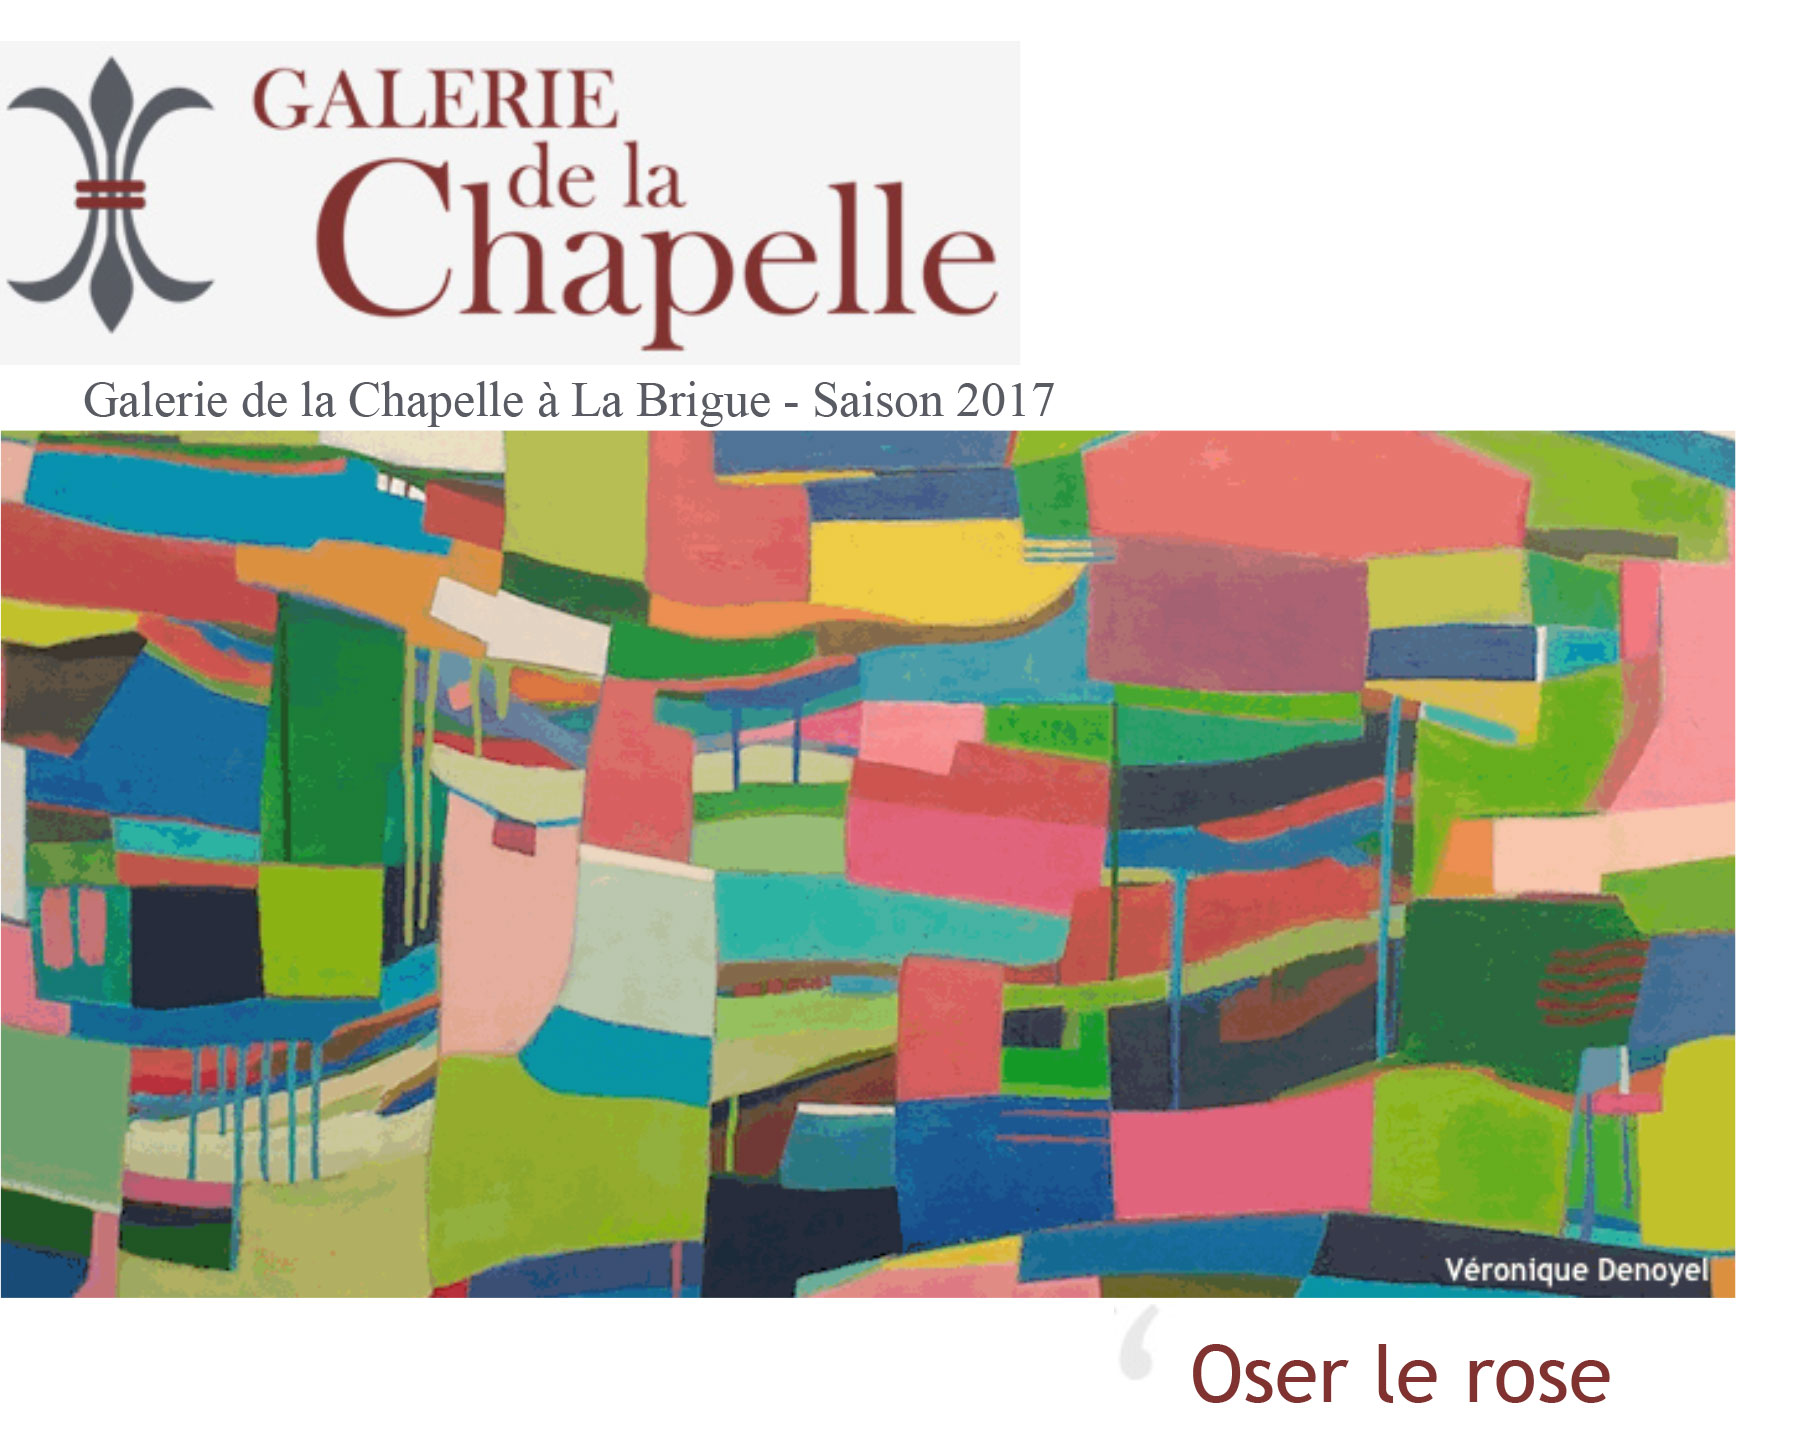 Mostre - Galerie de la Chapelle, La Brigue 2017